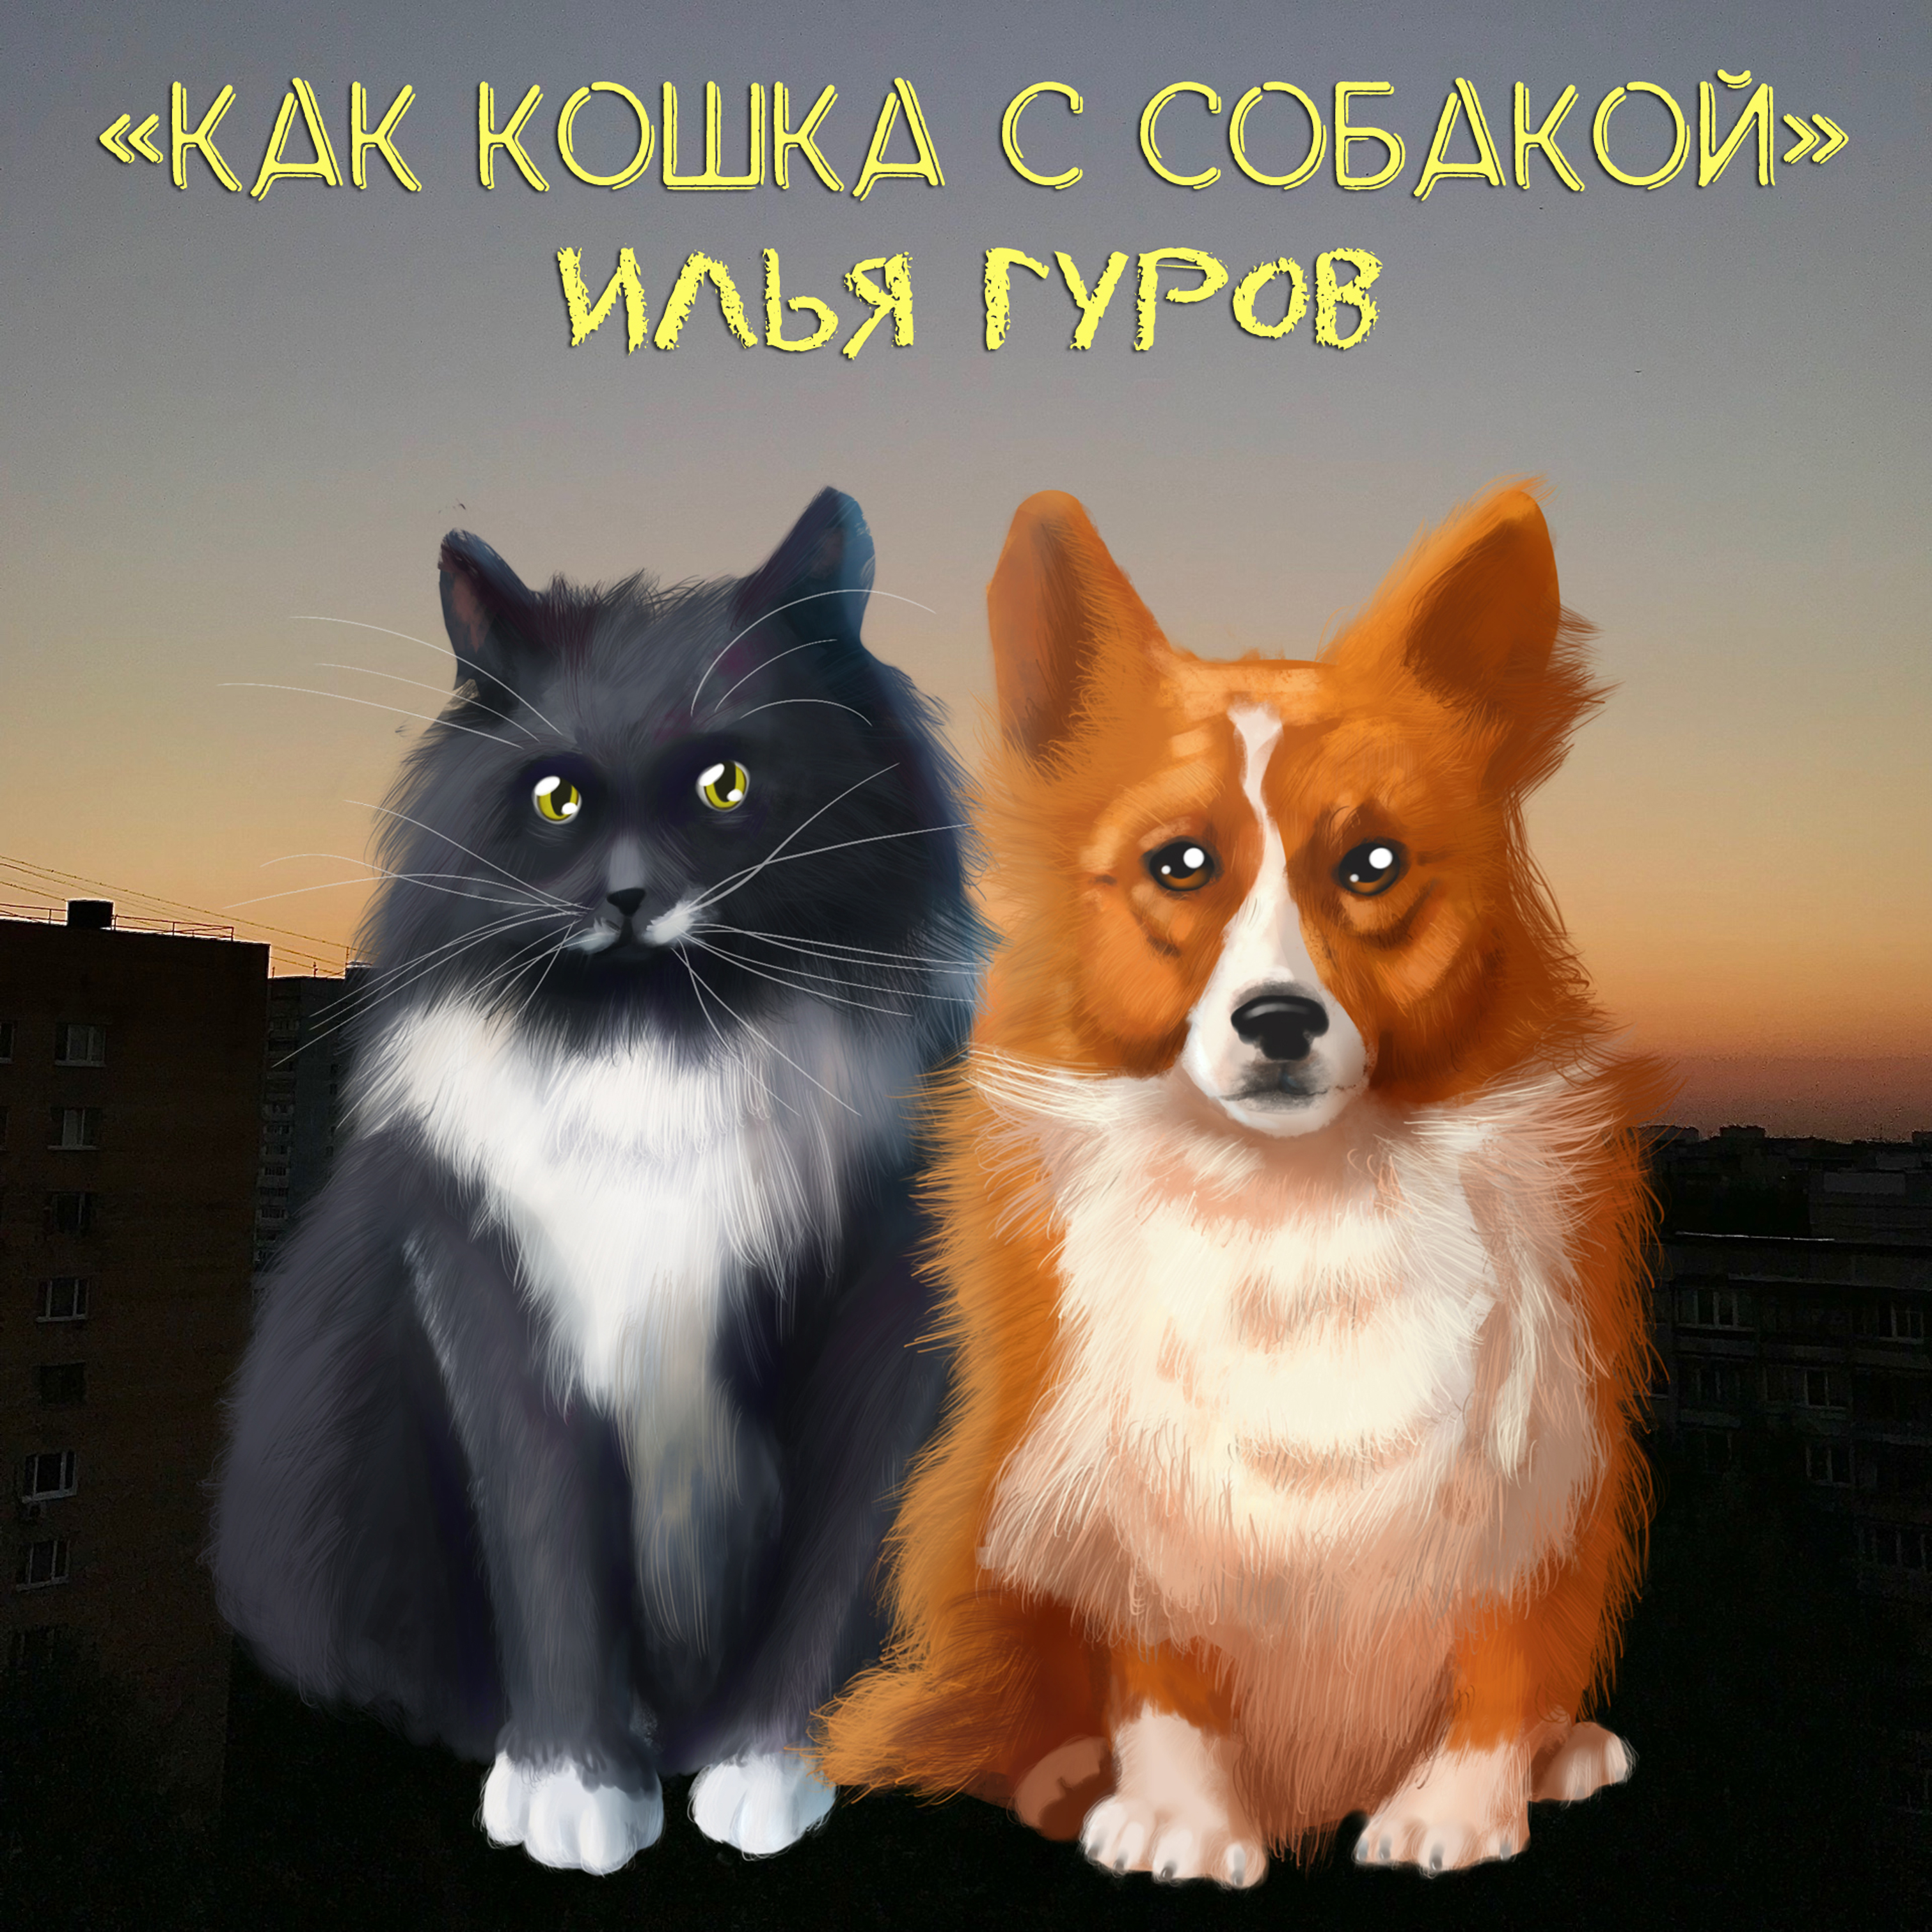 фото: Илья Гуров выпустил песню "Как кошка с собакой" в продолжение своей книги